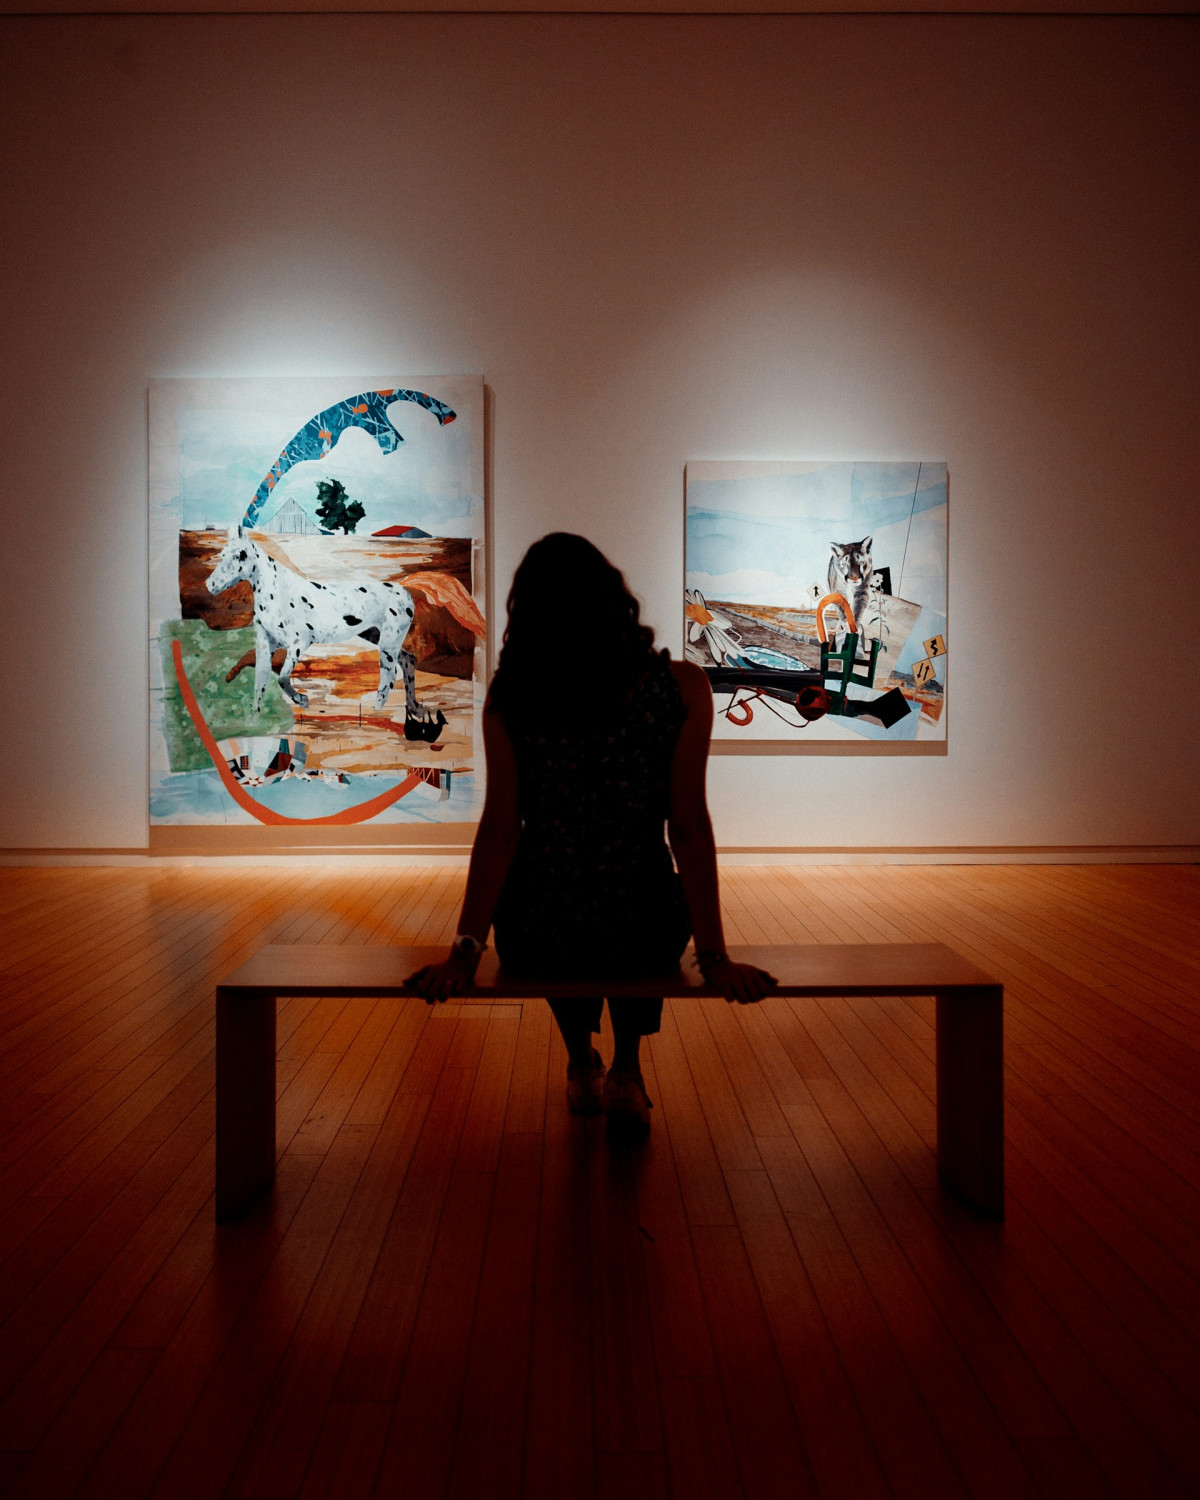 Девушка в галерее, картинная галерея, девушка смотрит на картины, искусство, поход в галерею помогает ментальному здоровью